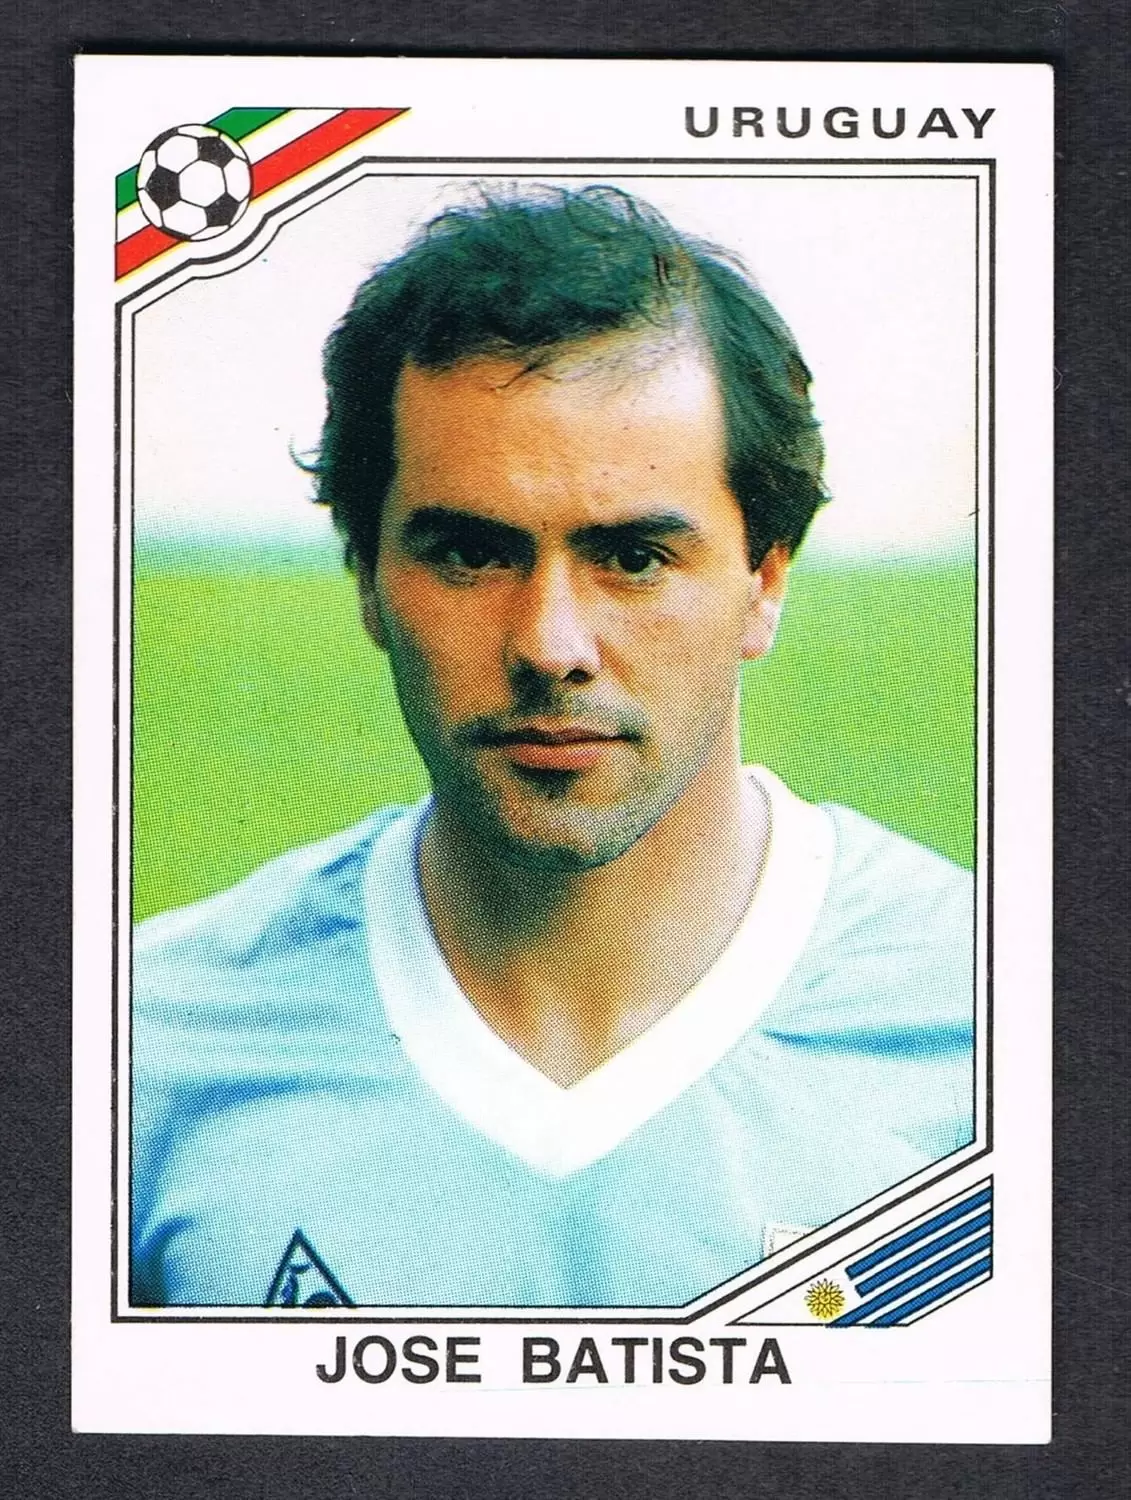 Mexico 86 World Cup - Jose Batista - Uruguay